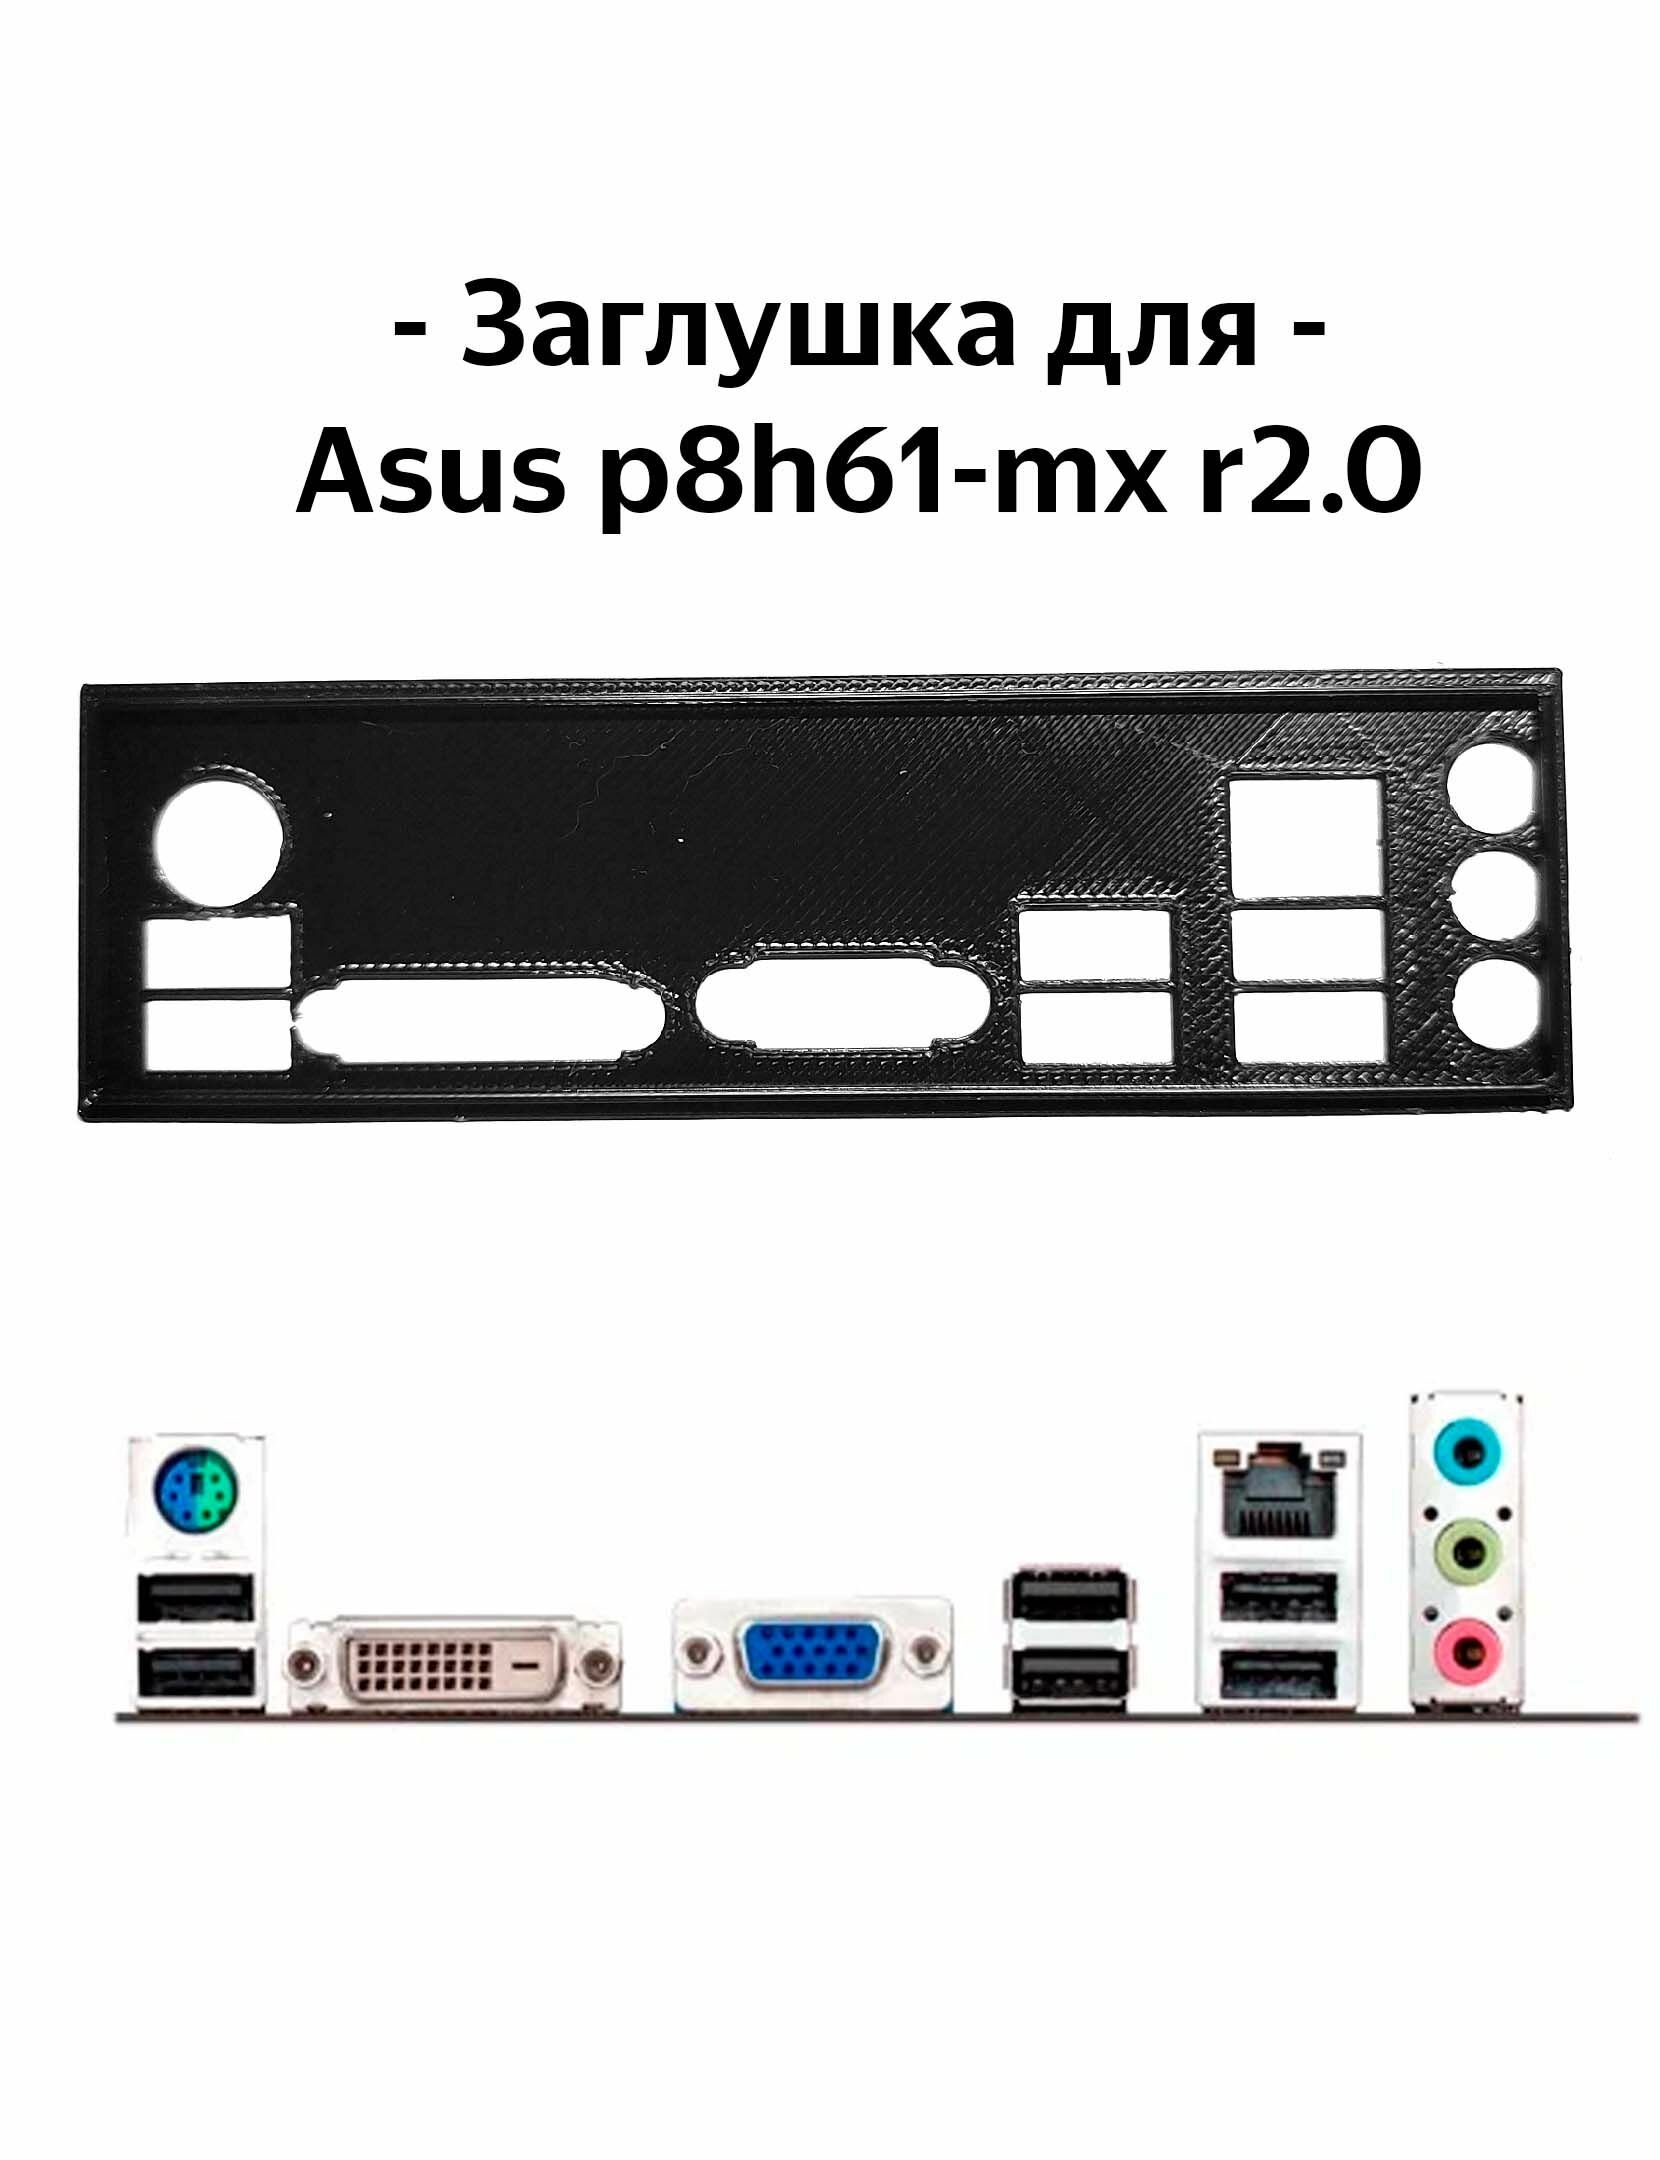 Пылезащитная заглушка, задняя панель для материнской платы Asus p8h61-mx r2.0